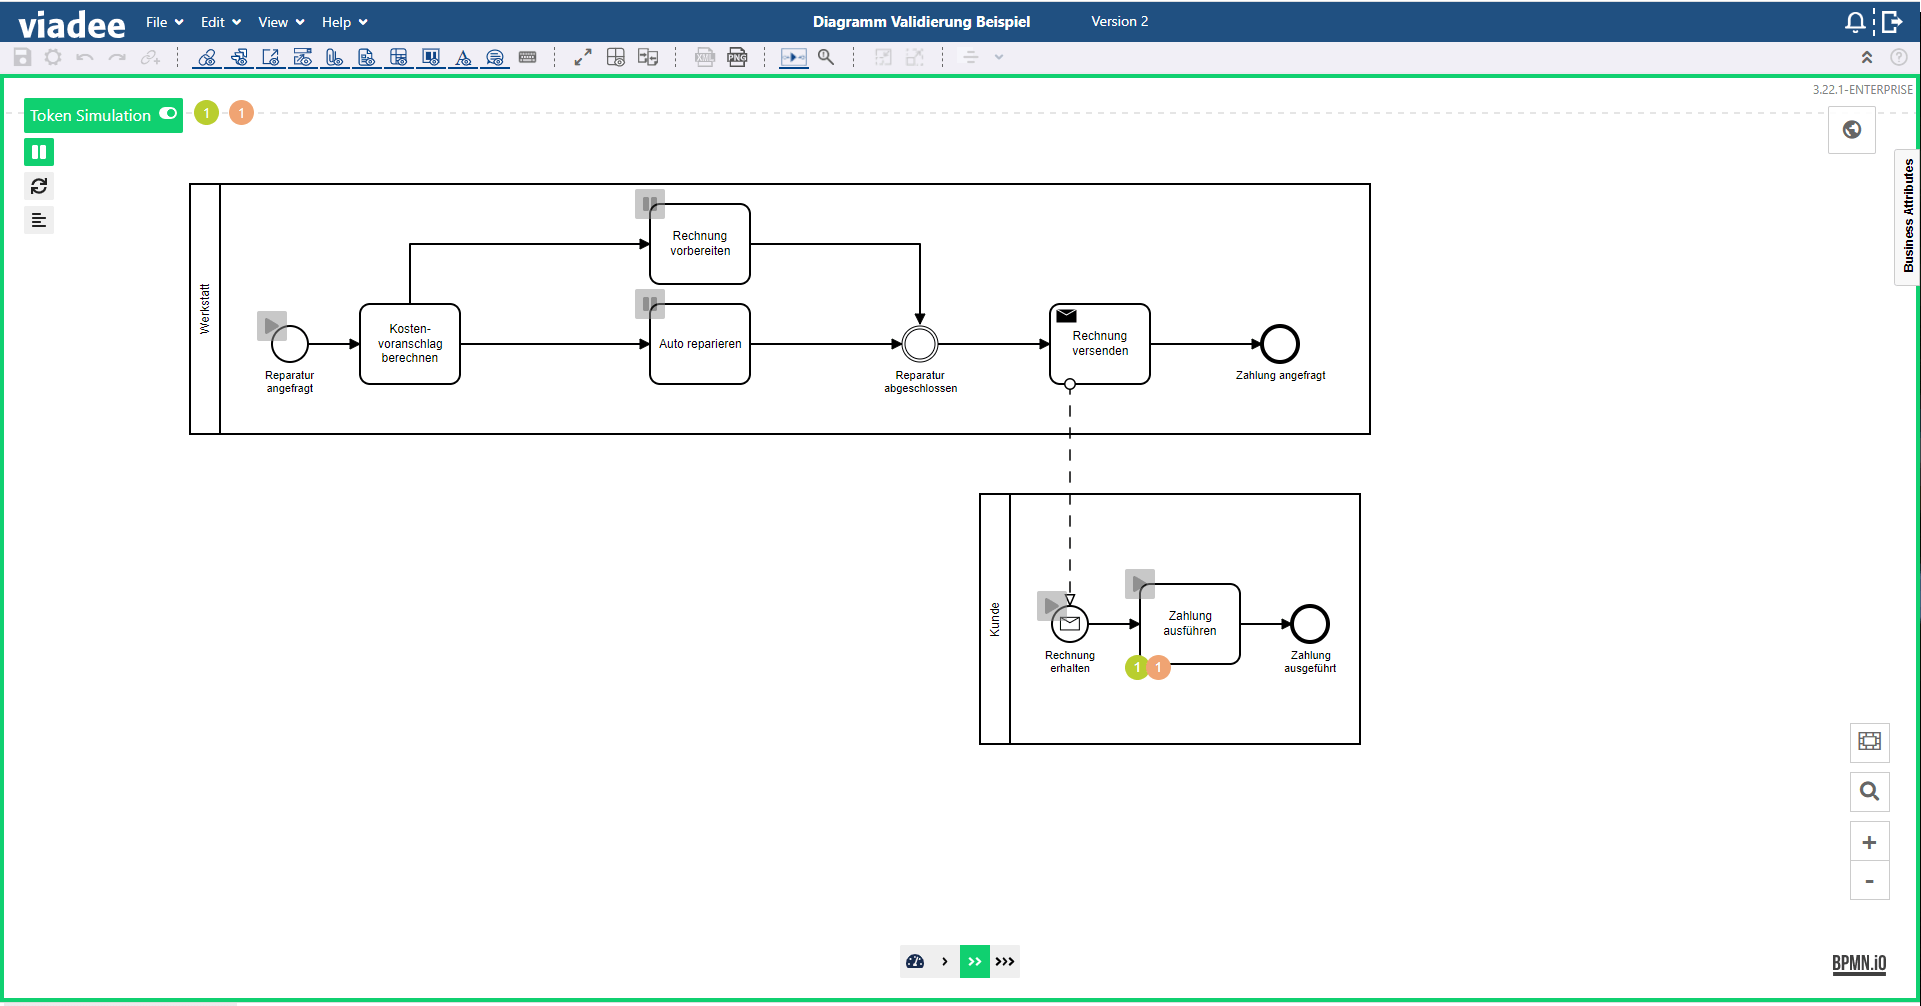 5-BPMN-Modeler-Diagramm